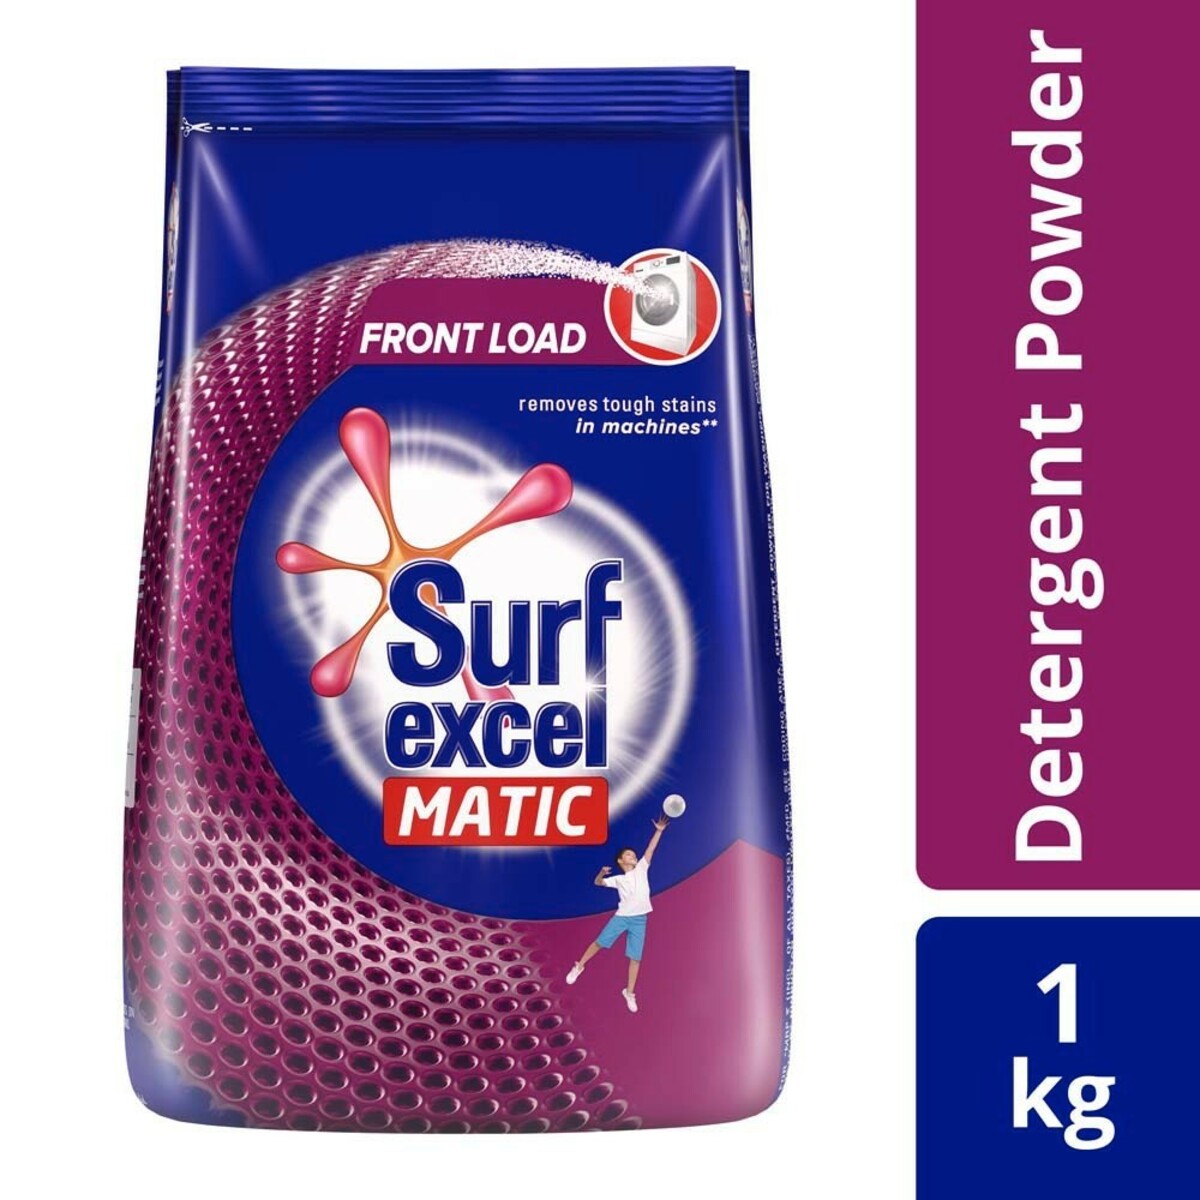 Surf Excel Matic Front Load Detergent Powder 1kg